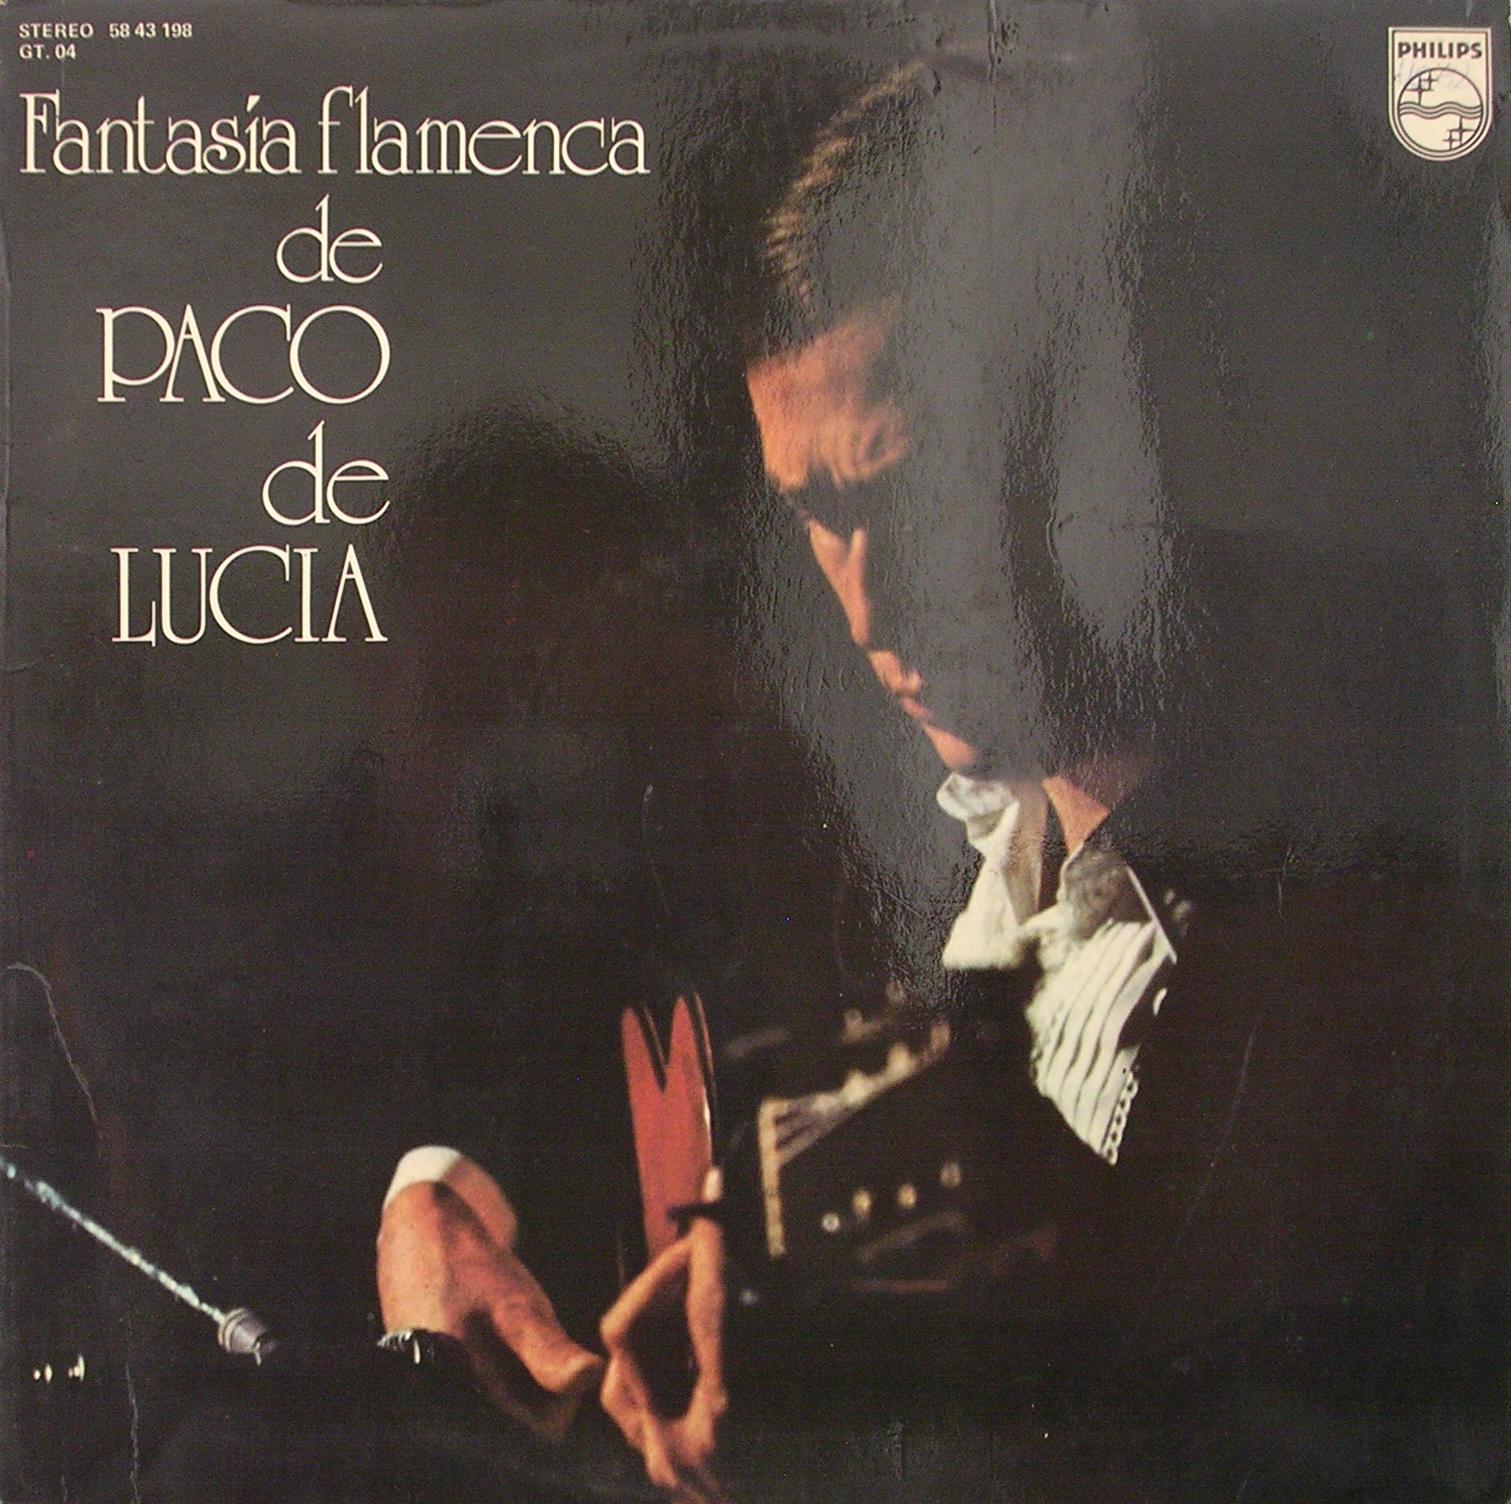 [Paco+de+Lucia+-+Fantasia+Flamenca-front.JPG]